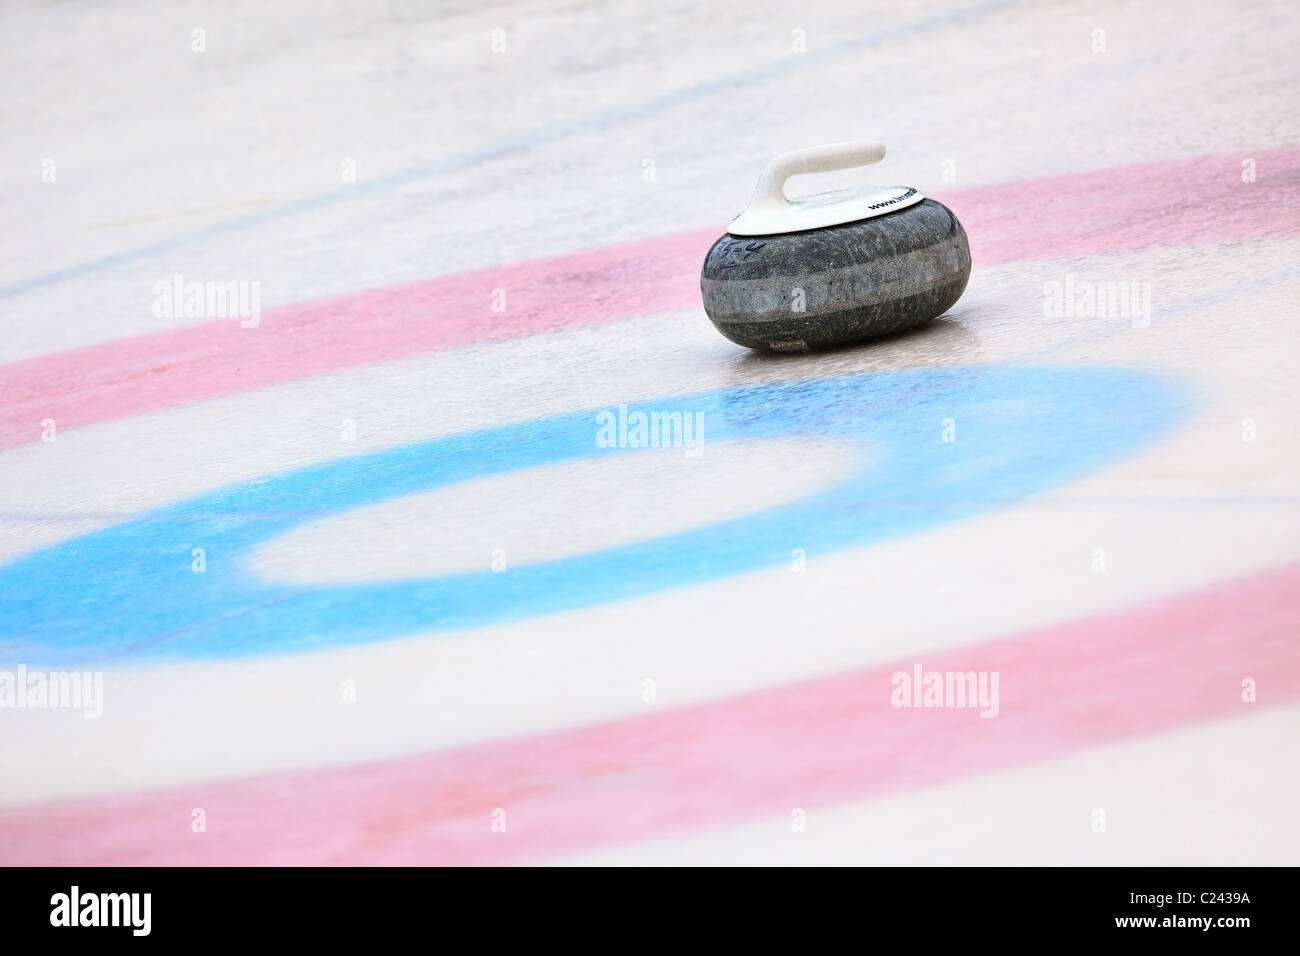 Curling-Rock und Ringe auf dem gefrorenen Assiniboine River. Stockfoto